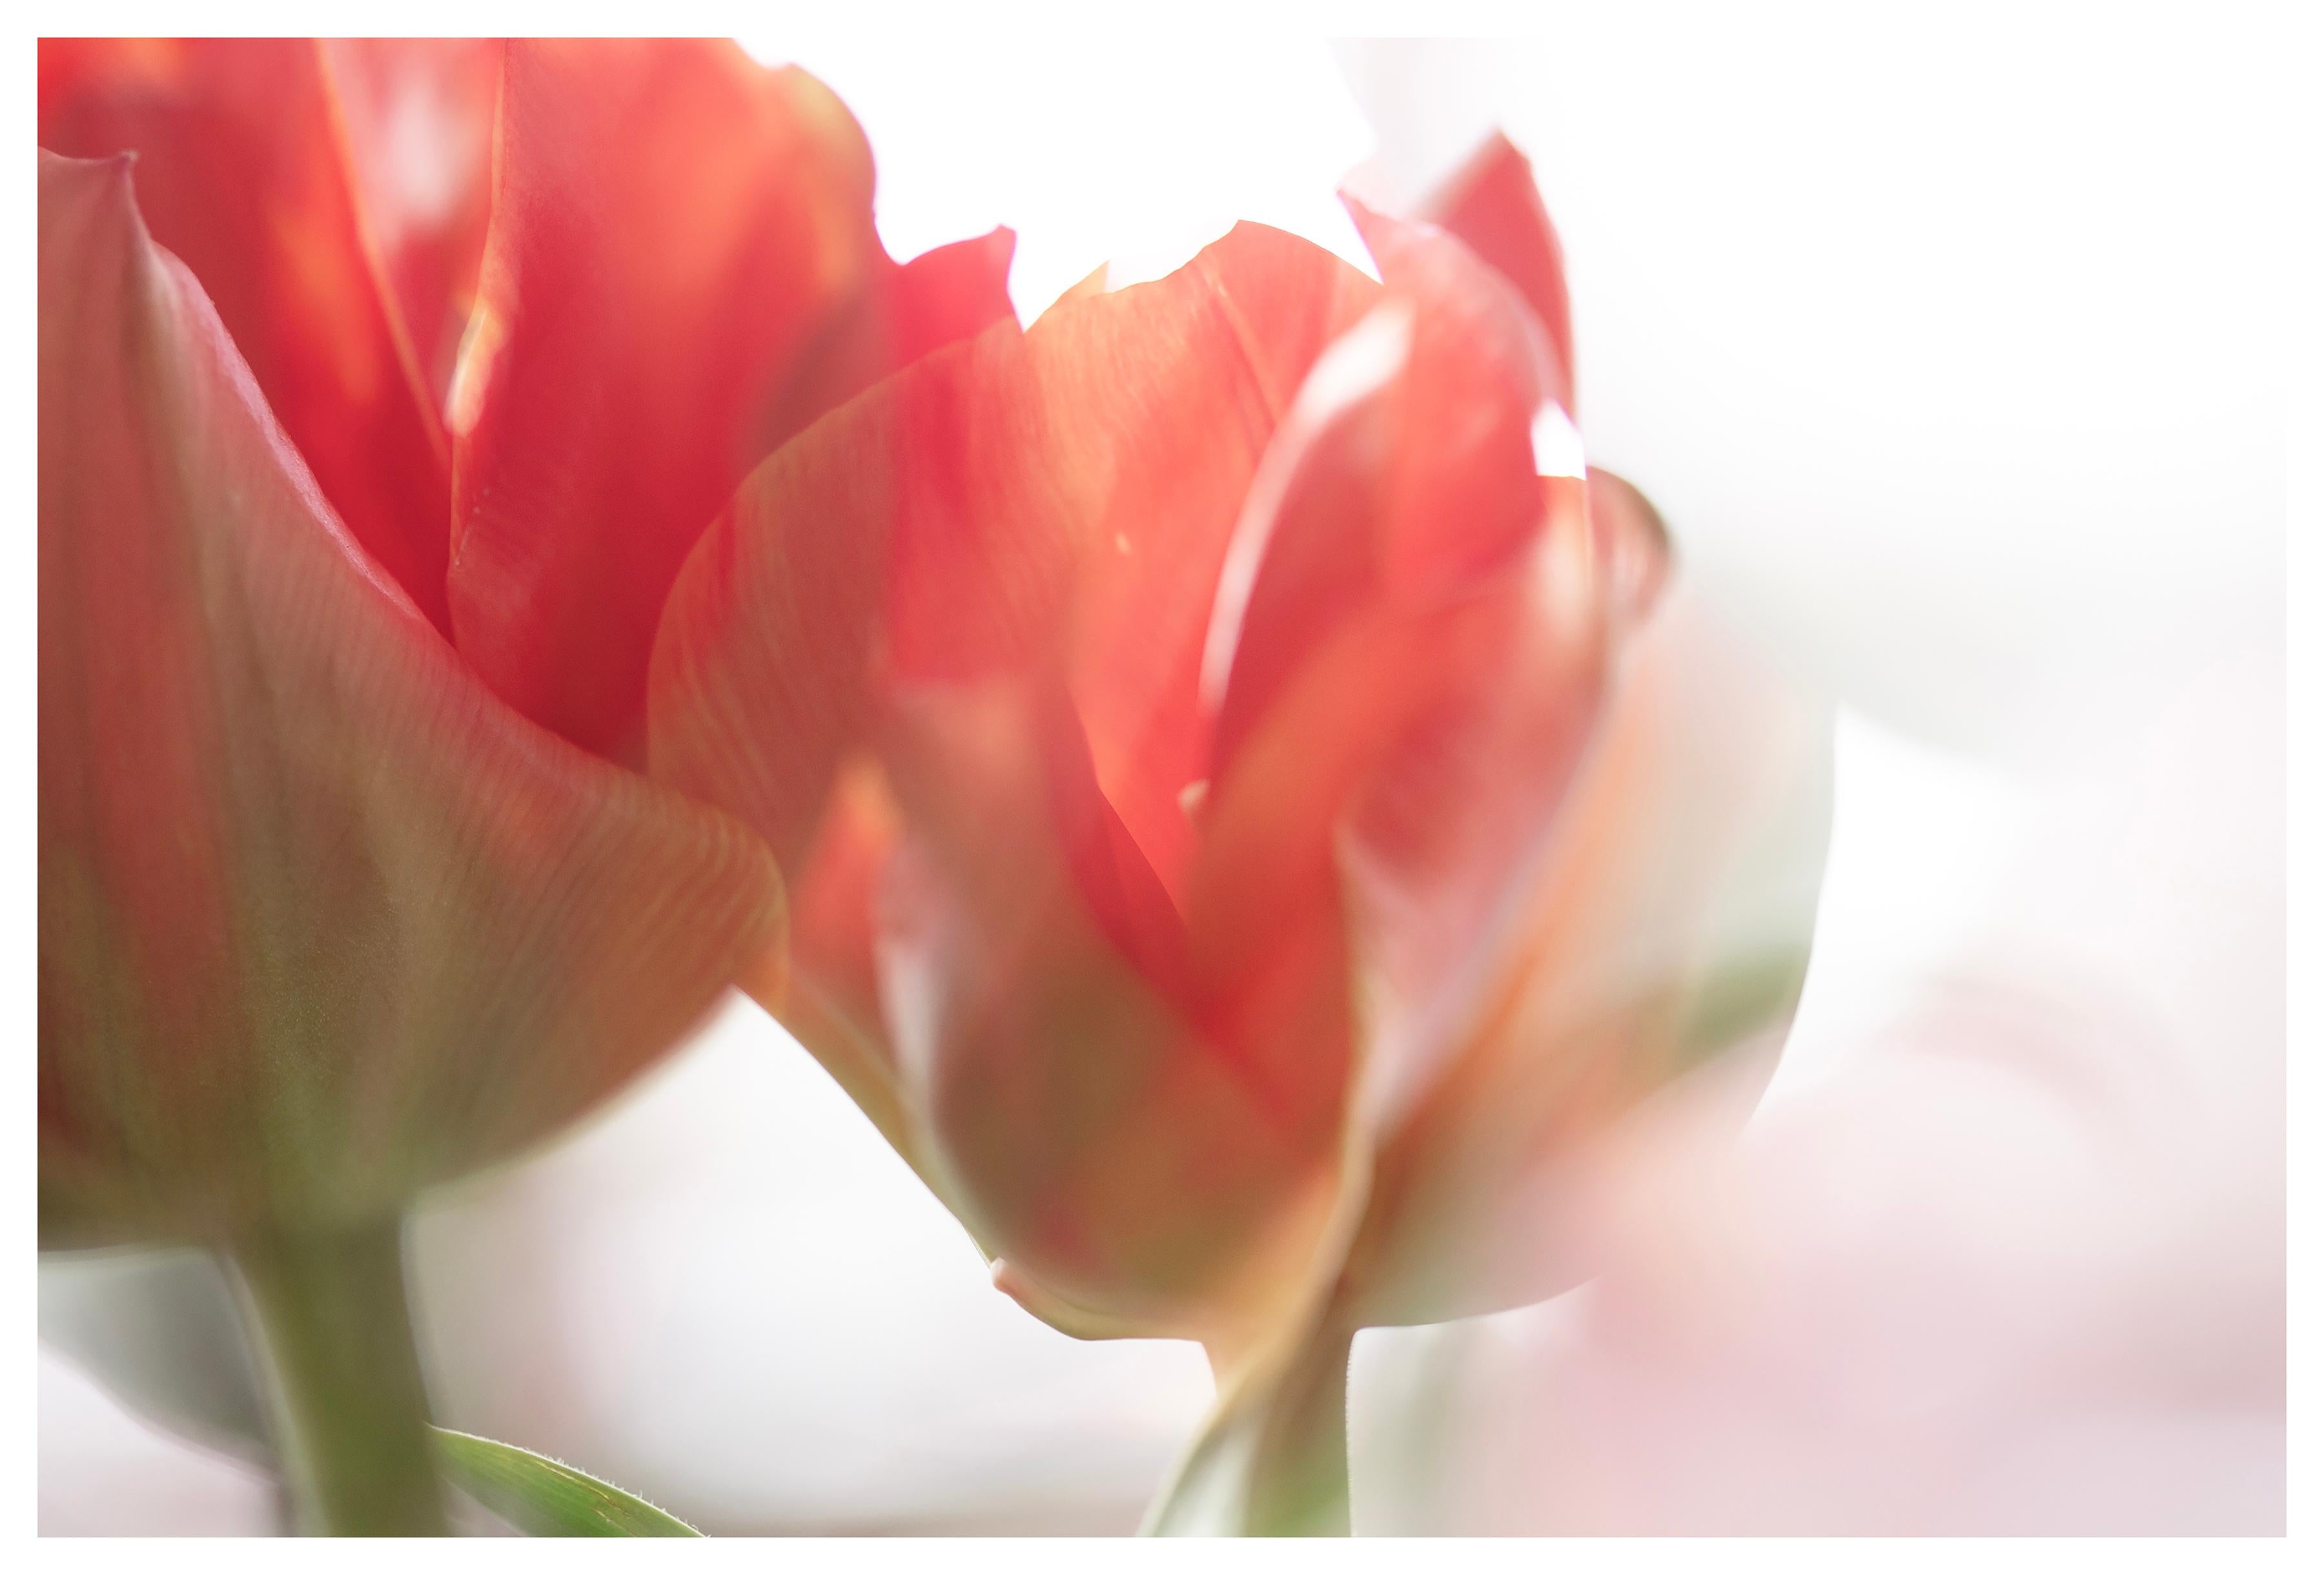 Abstract Photograph Sophia Milligan - « Sunday's Tulips (I) » Photographie à grande échelle audacieuse fleur pastel rouge orange blanc